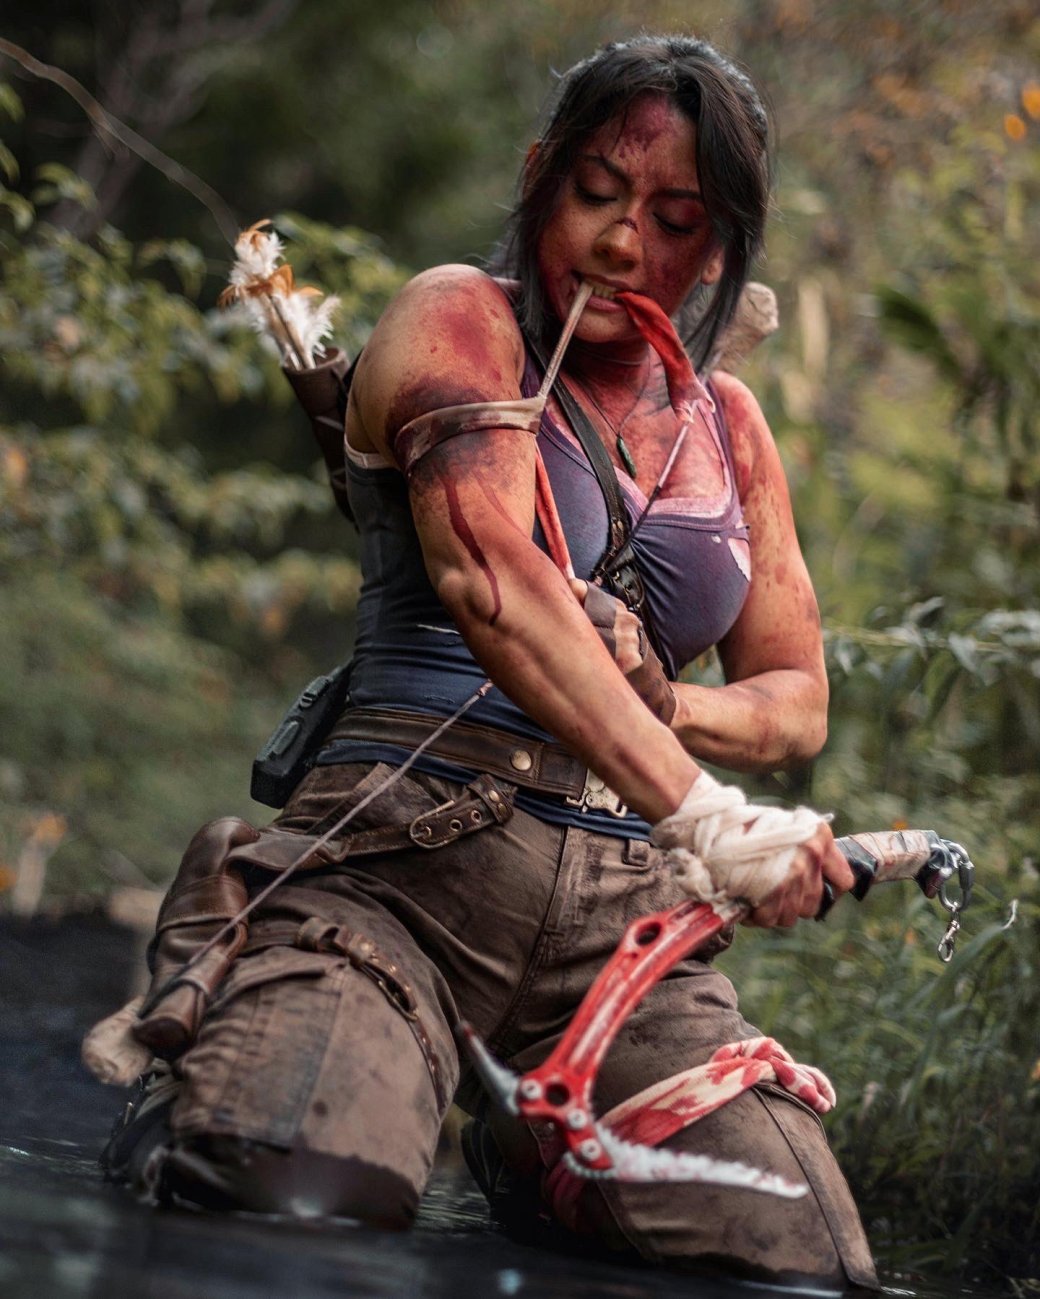 Галерея Косплеер показала образ окровавленной Лары Крофт из серии игр Tomb Raider - 3 фото